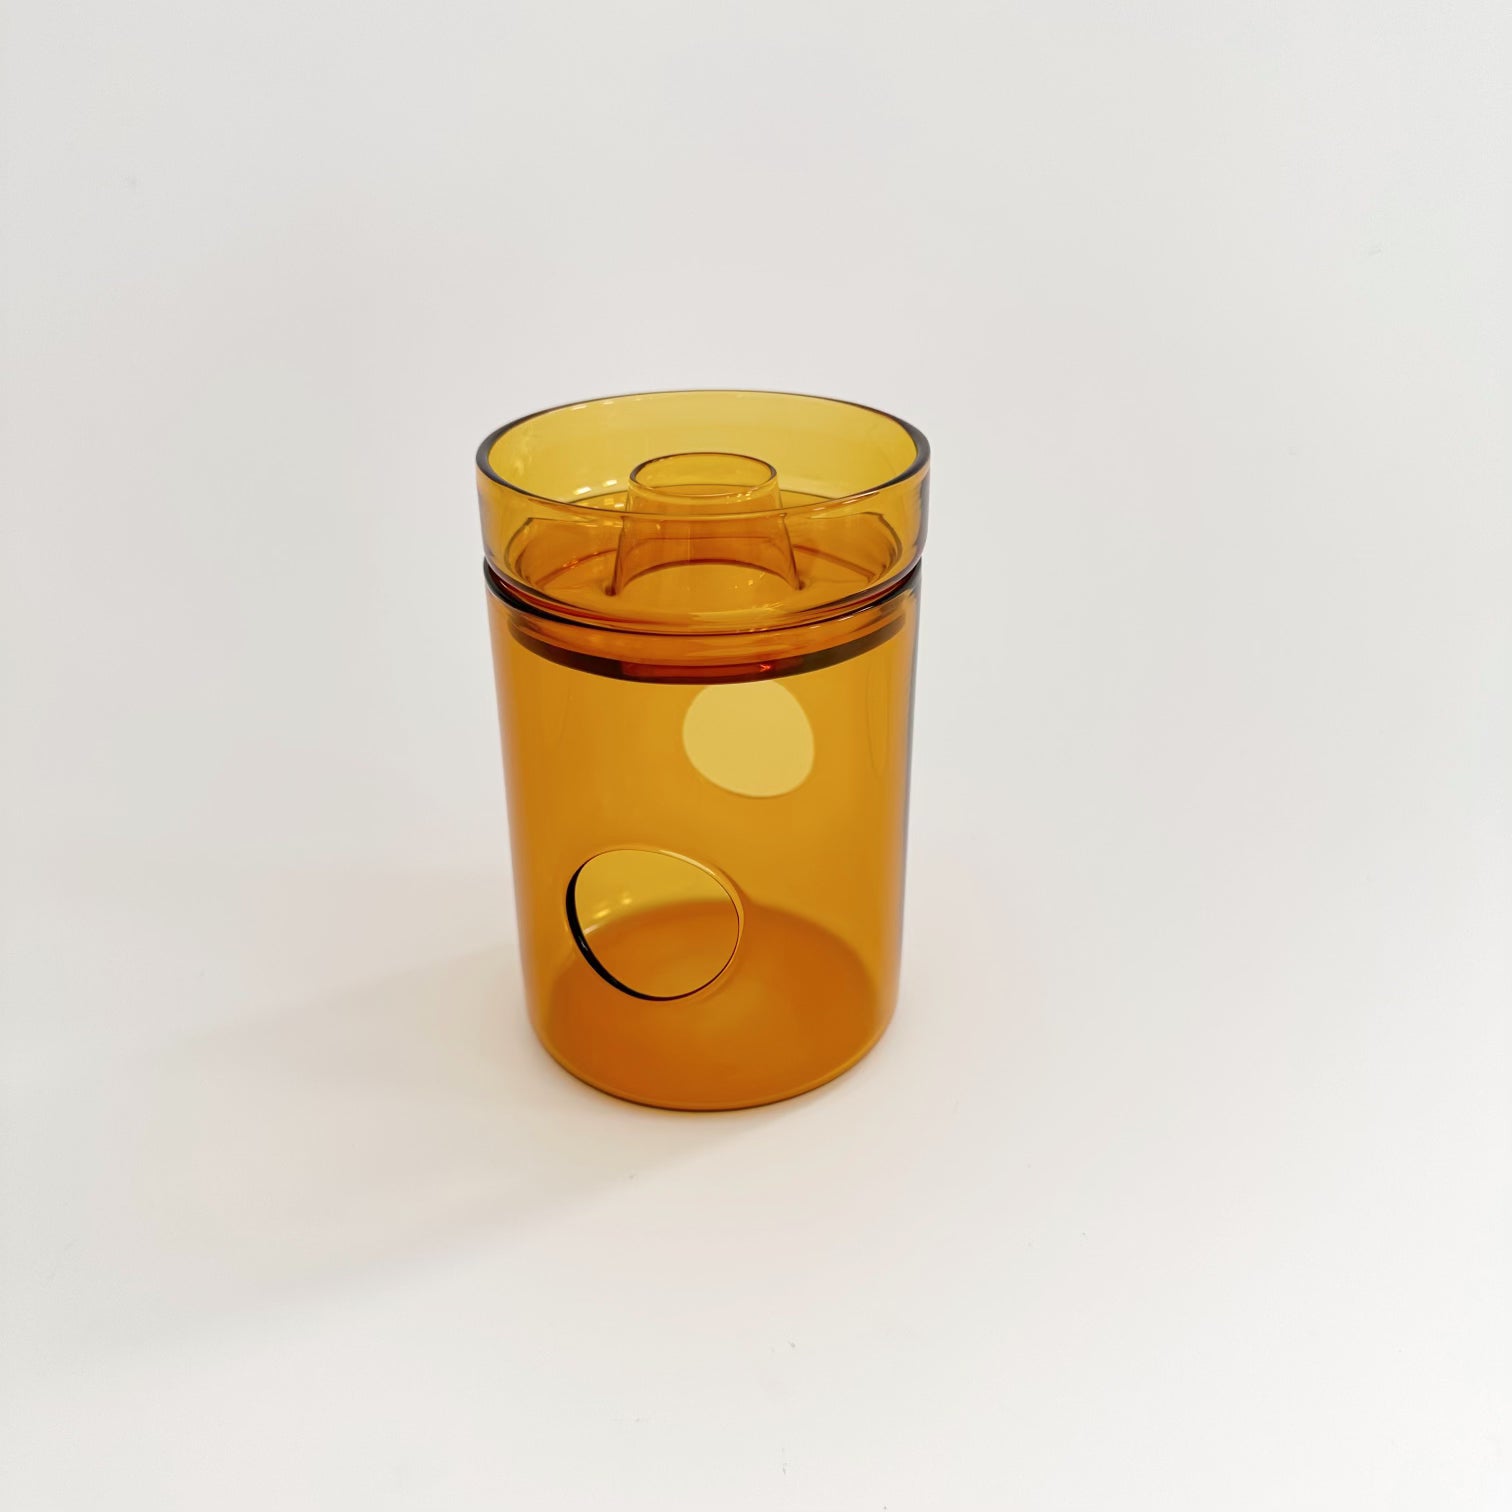 MILLIGRAM GLASS OIL BURNER: YELLOW